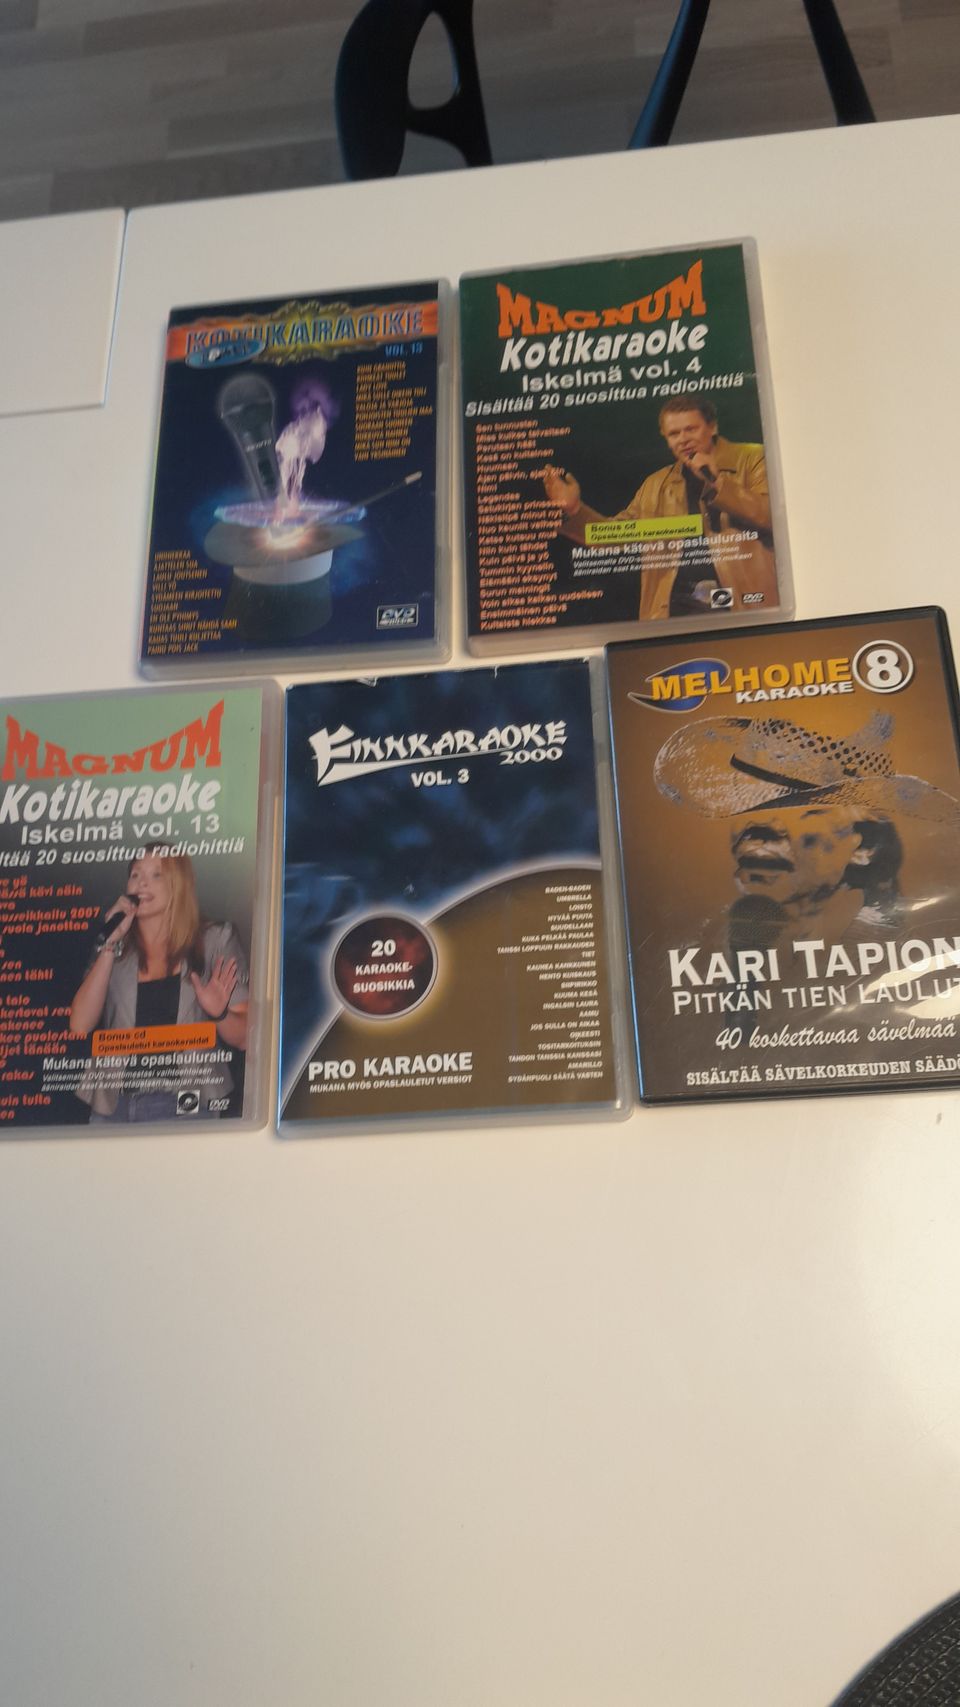 Suomi karaoke dvd 5 kpl